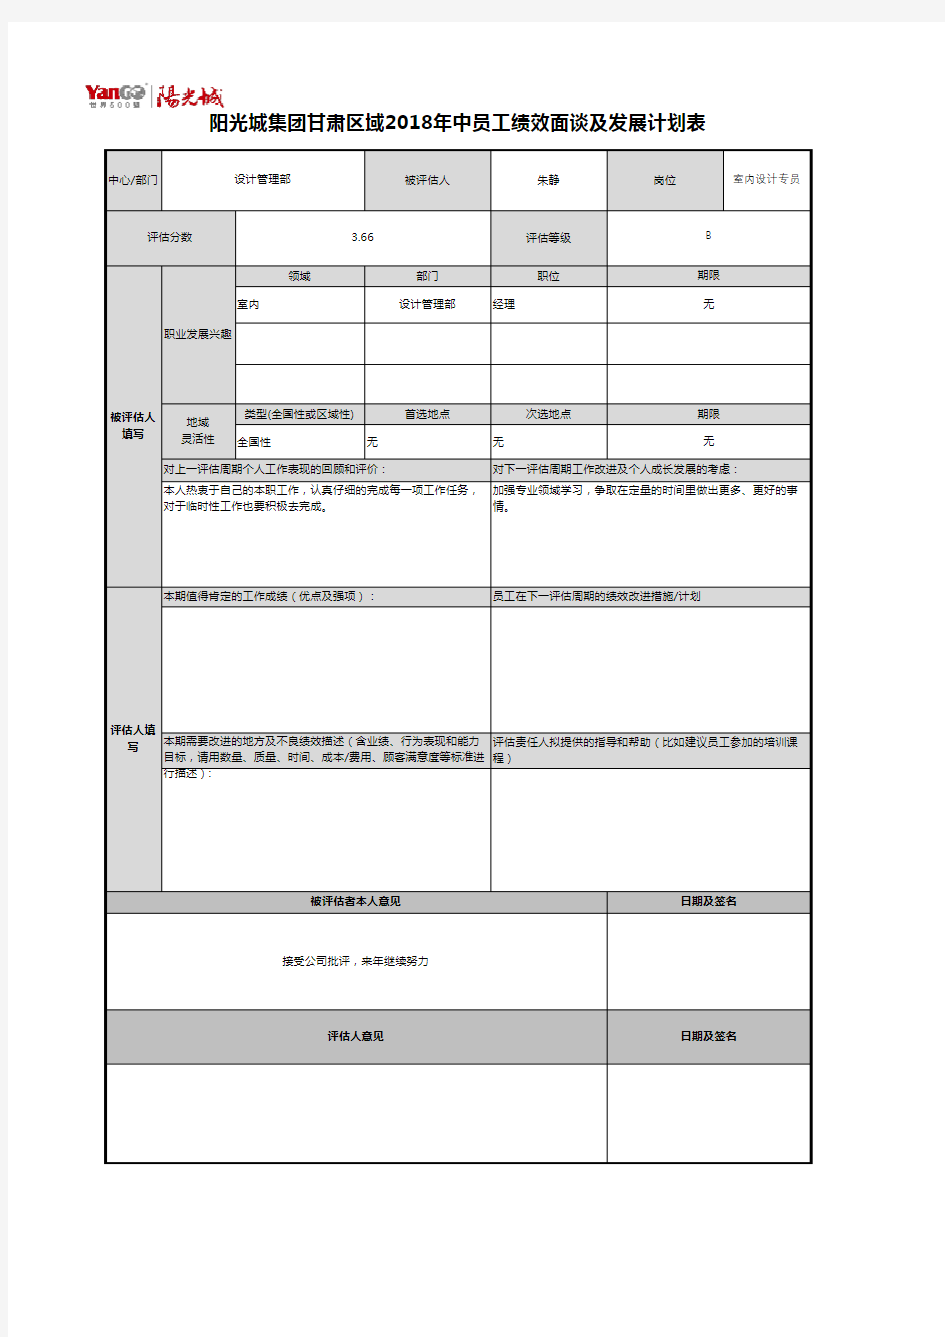 阳光城地产-员工绩效面谈和改进计划表(朱静)